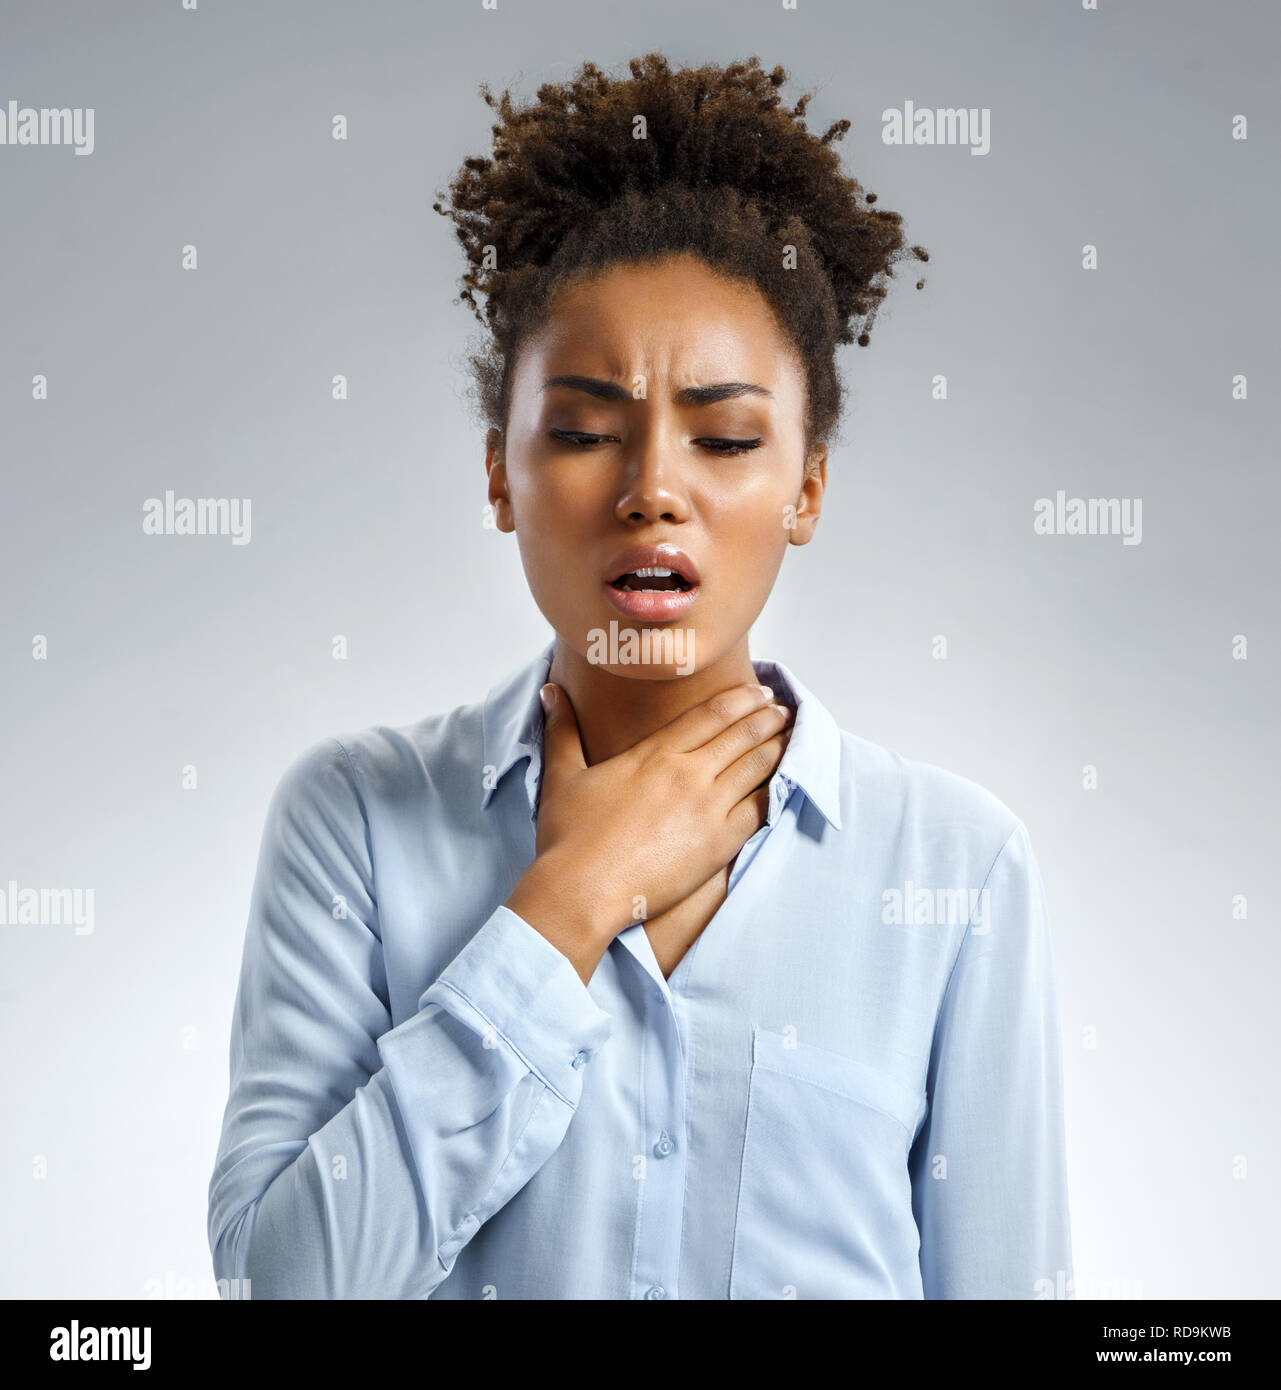 El dolor de garganta. Mujer sosteniendo su garganta inflamada. Foto de afroamericana en camisa azul sobre fondo gris. Concepto médico Foto de stock